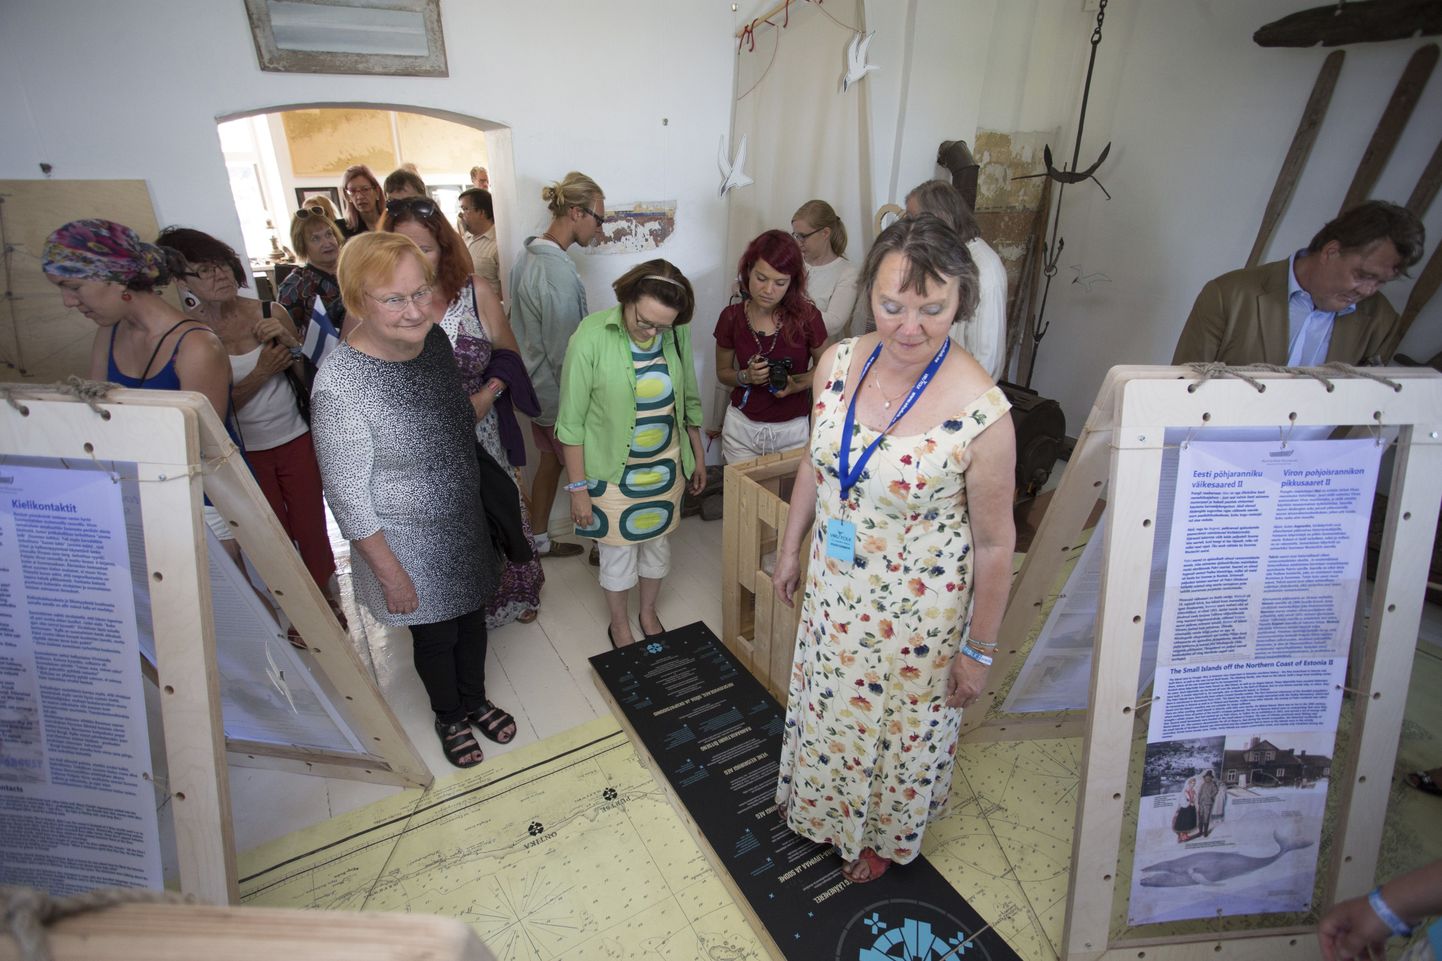 Näitust “Piirideta meri” uudistas ühe huvilisena ka Viru Folki väisanud Soome president Tarja Halonen.